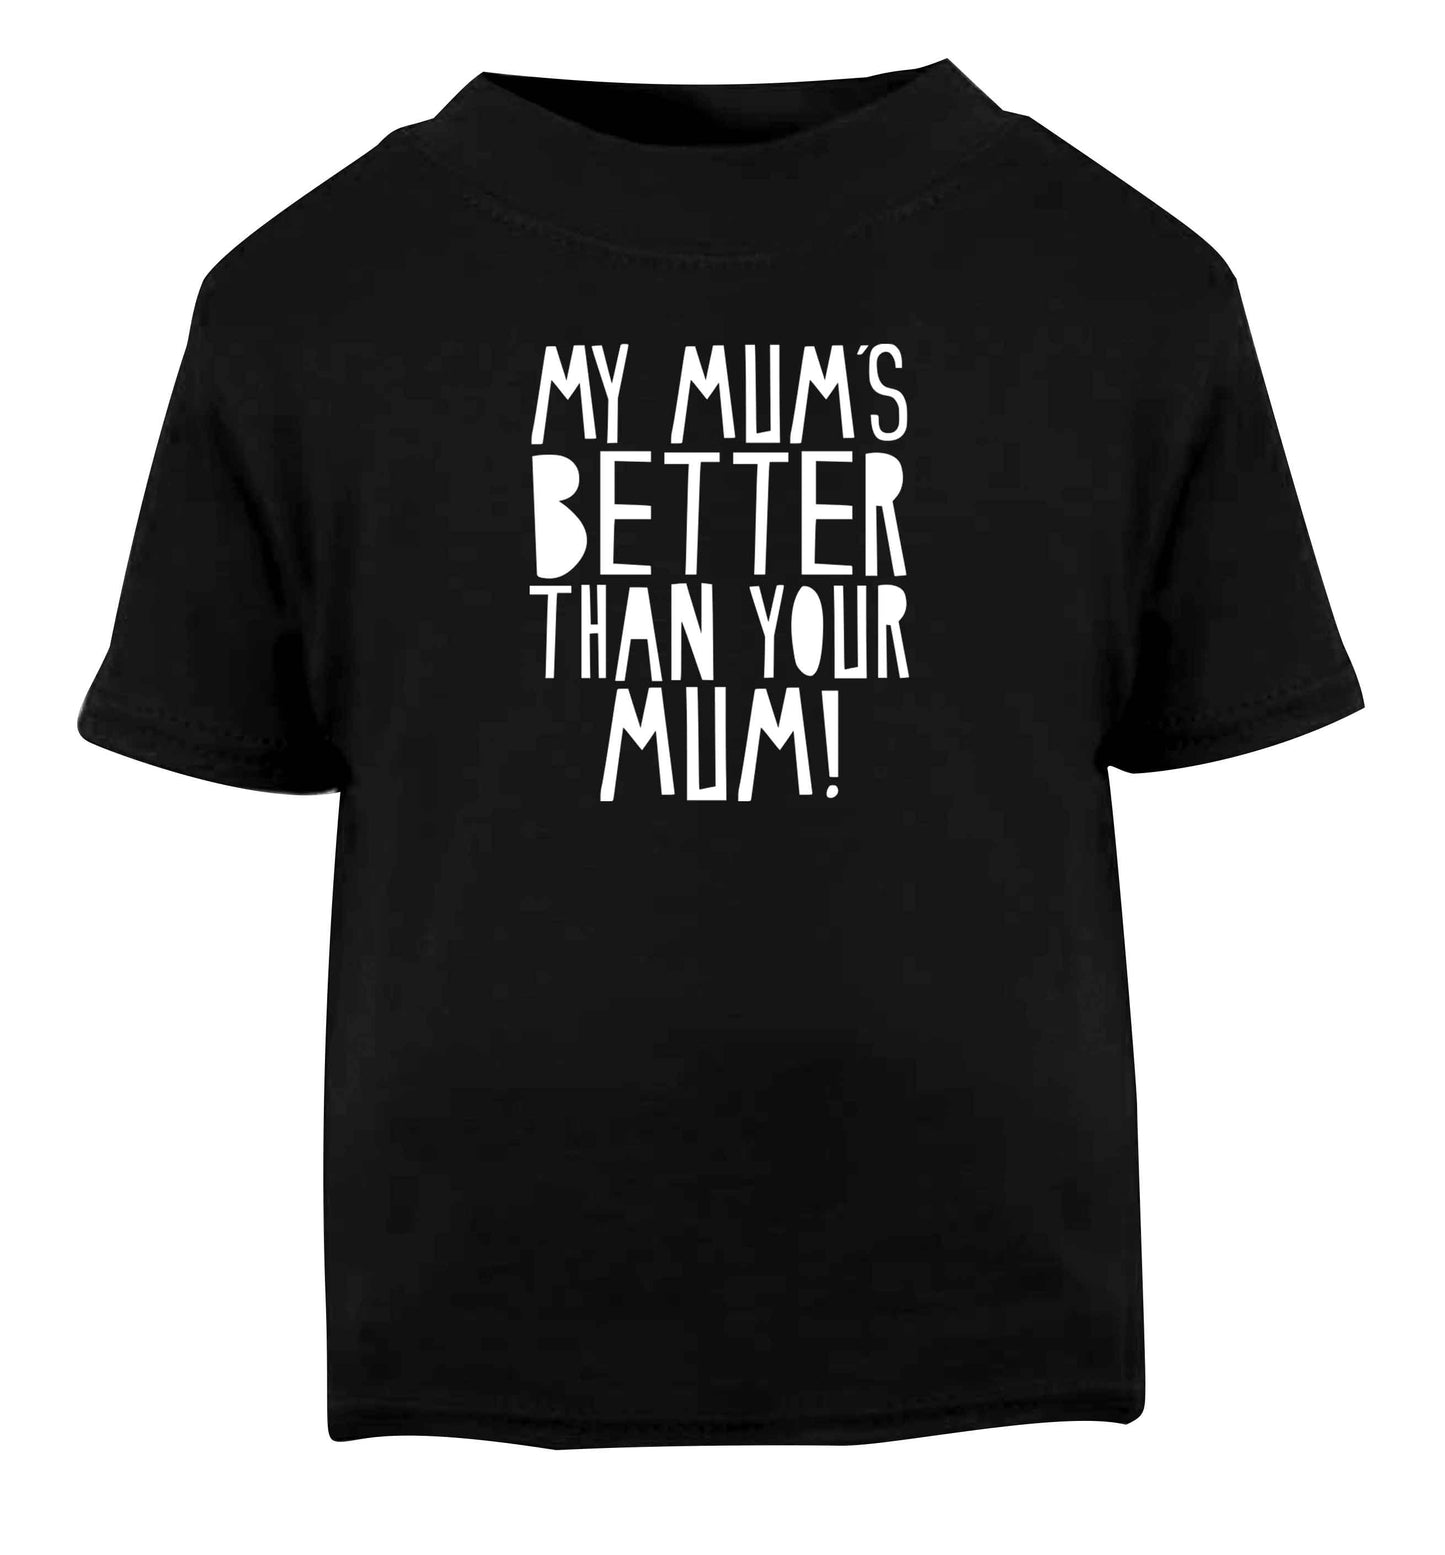 My mum's better than your mum Black baby toddler Tshirt 2 years